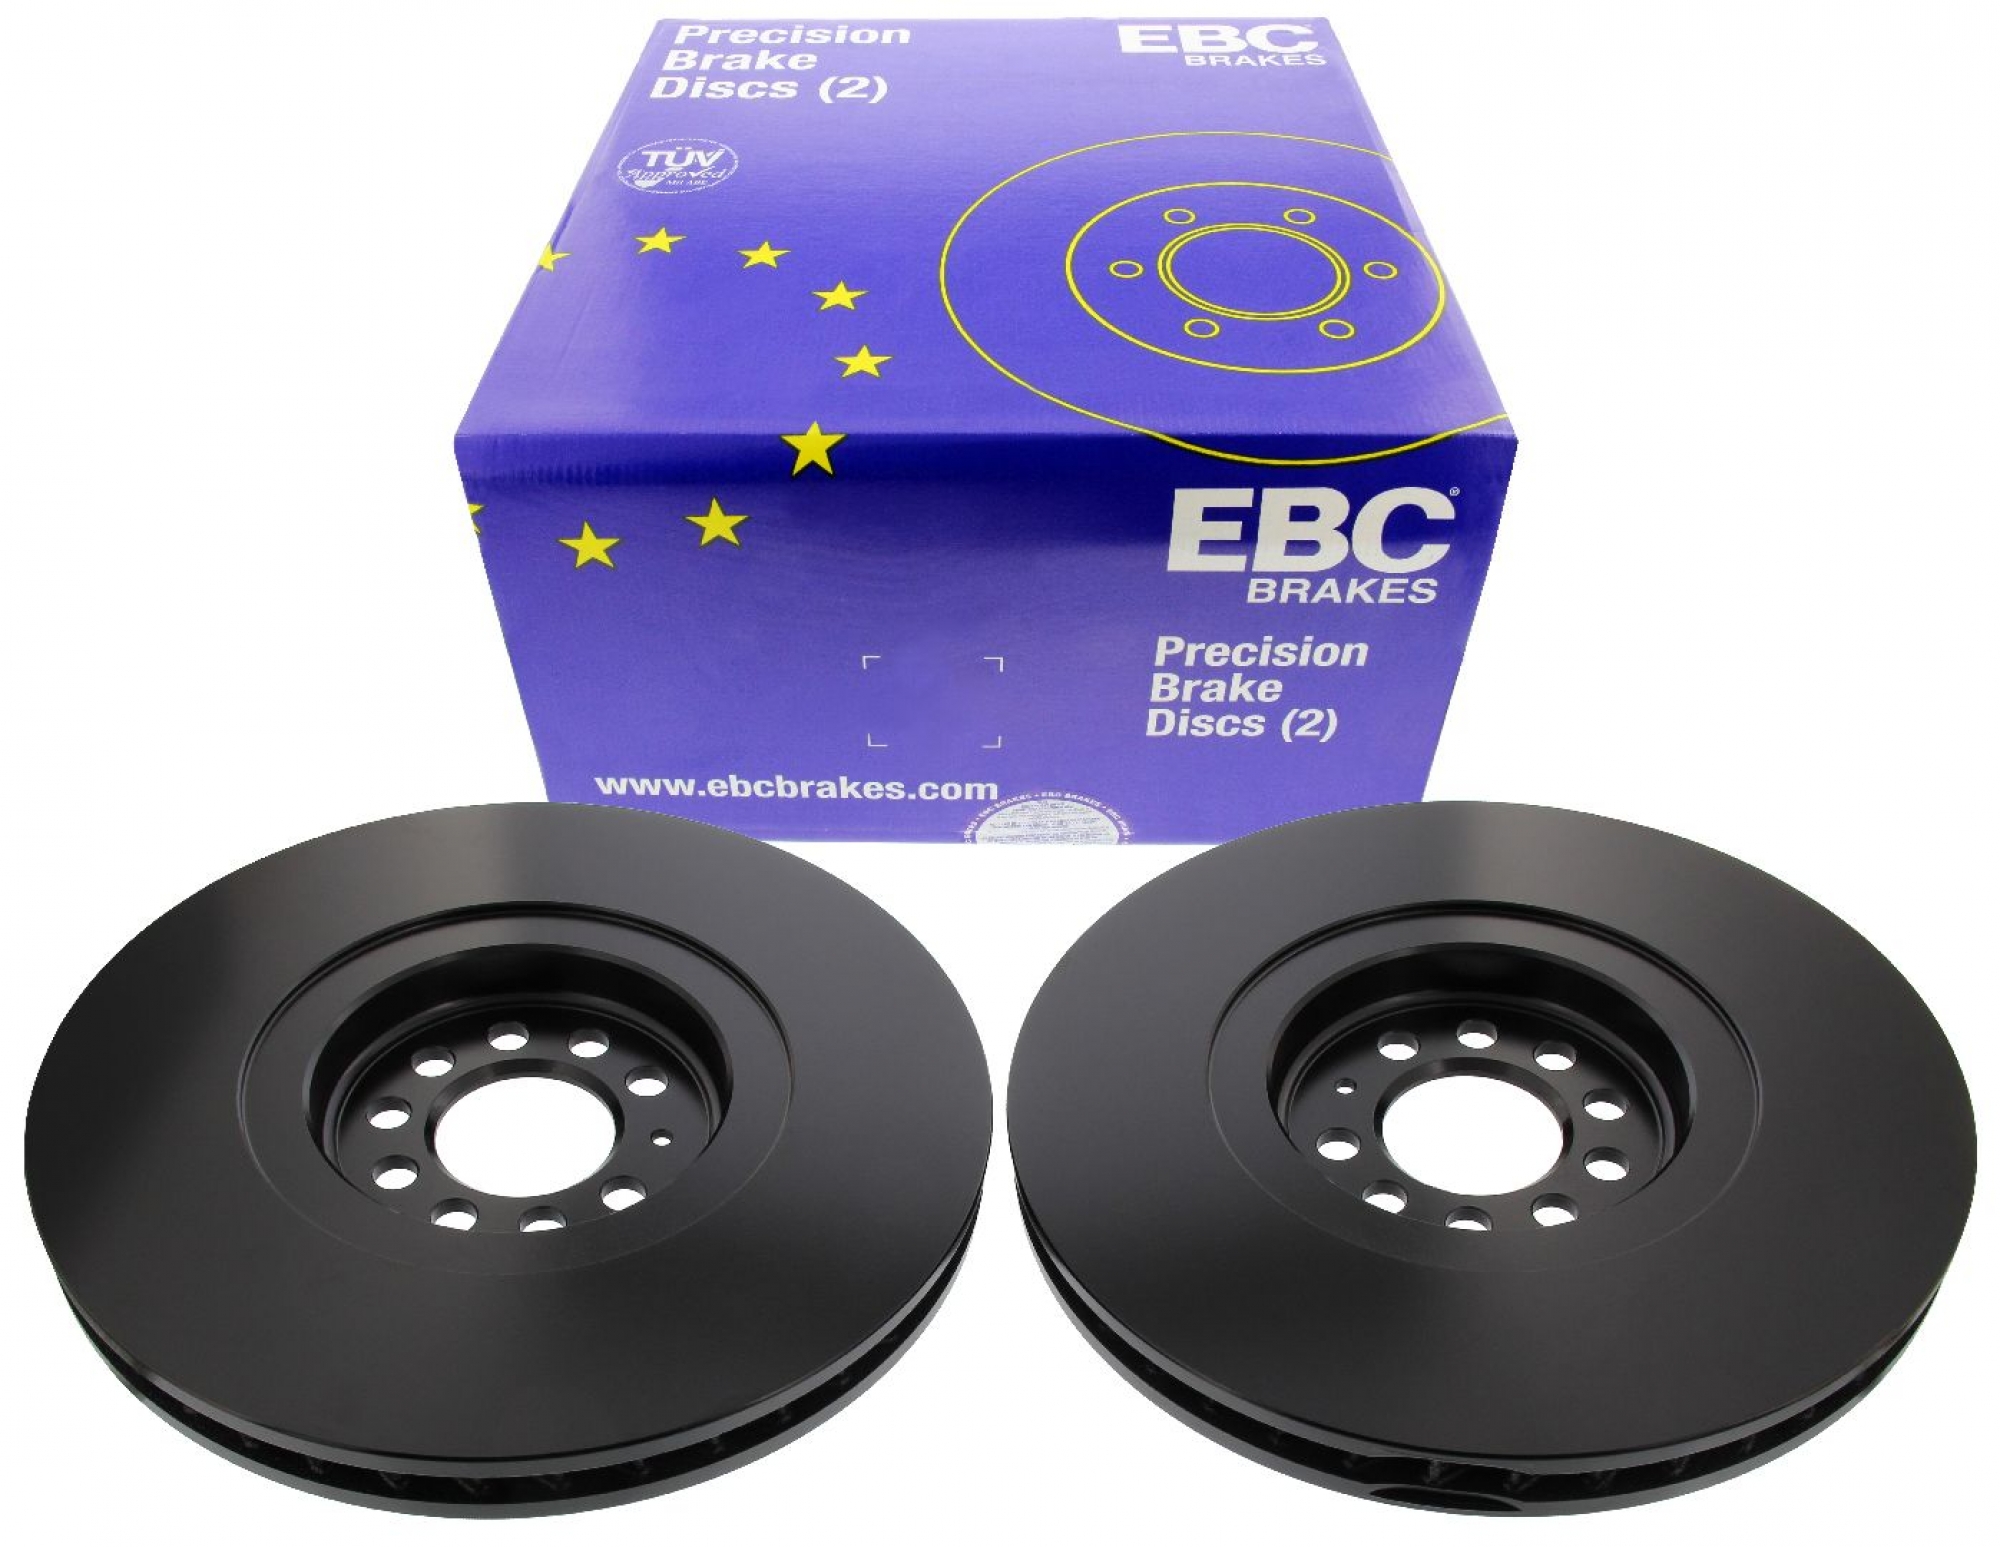 EBC-Bremsscheiben, Premium Sportbremsscheiben, 2-teilig, VA, VW Golf 4 R32, Ø 334 mm